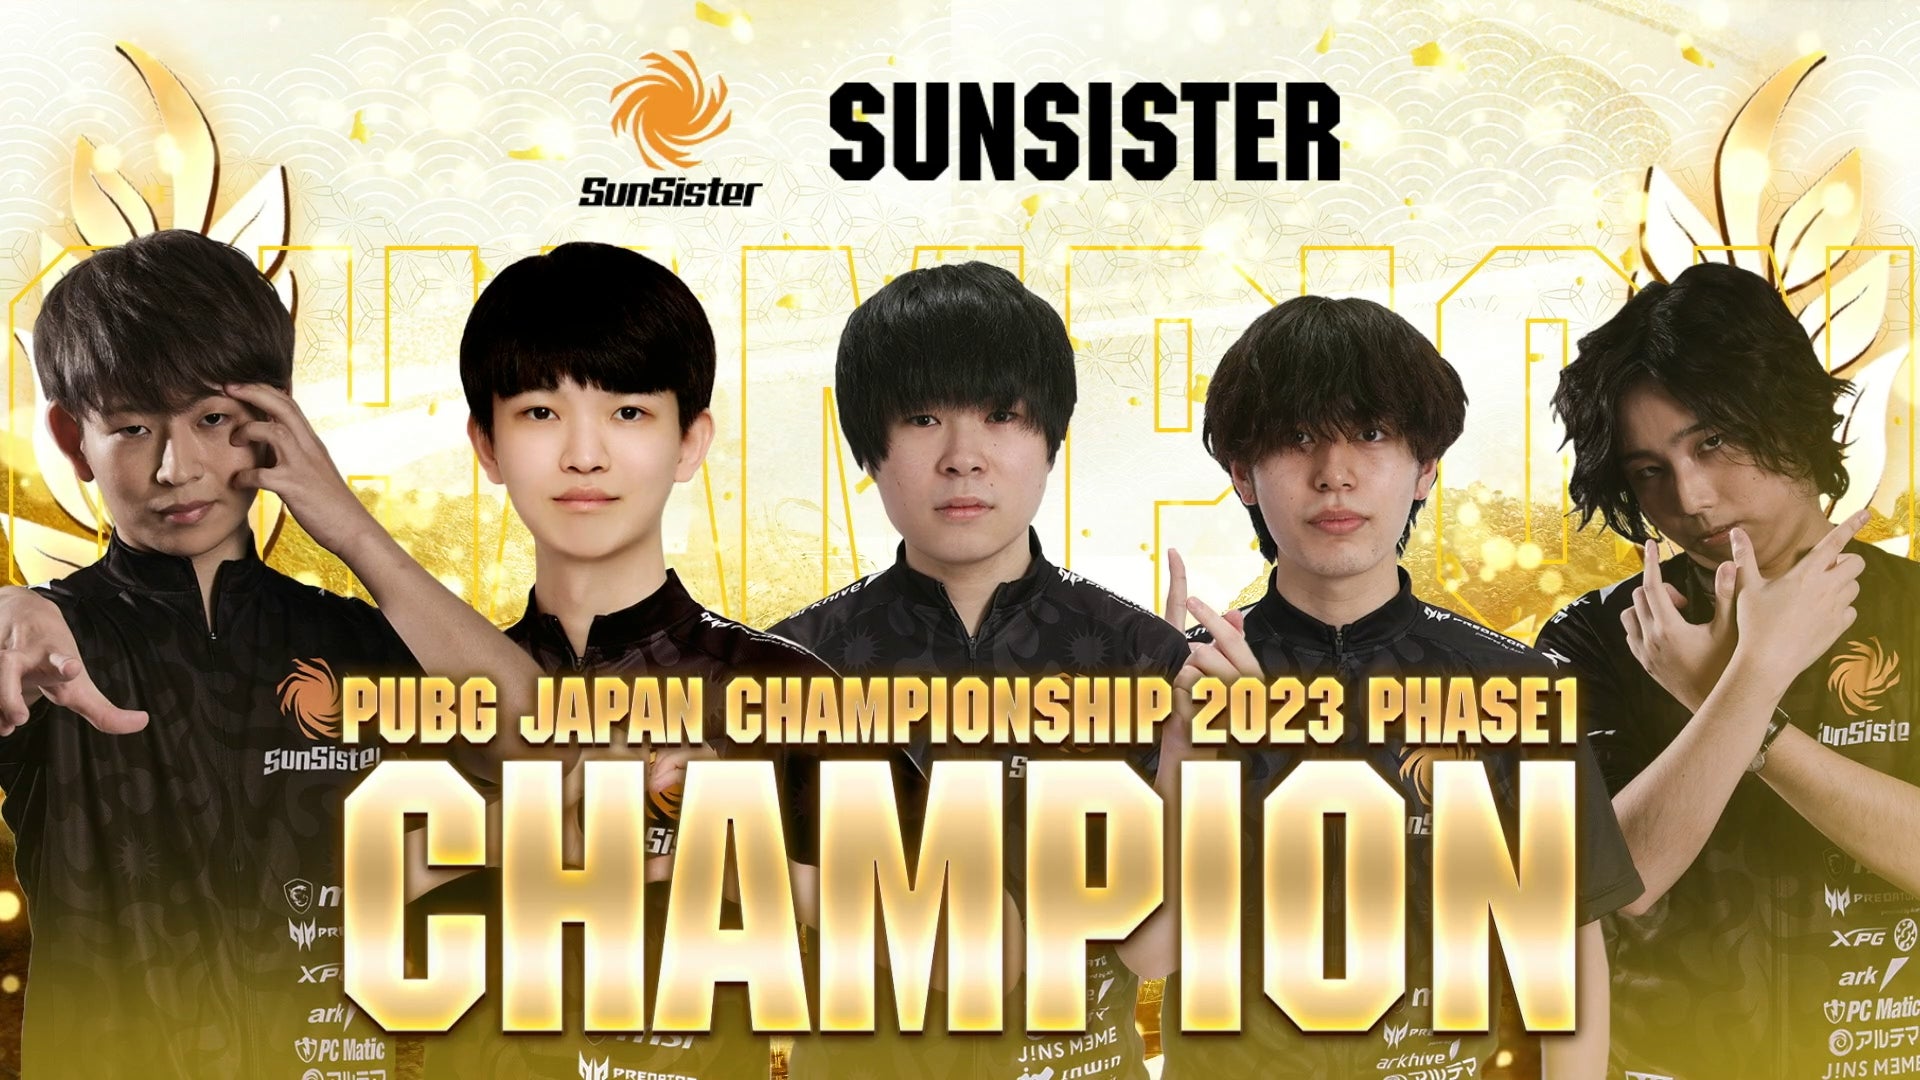 PUBG JAPAN CHAMPIONSHIP 2023 Phase1が終了し、SunSisterが優勝しました！